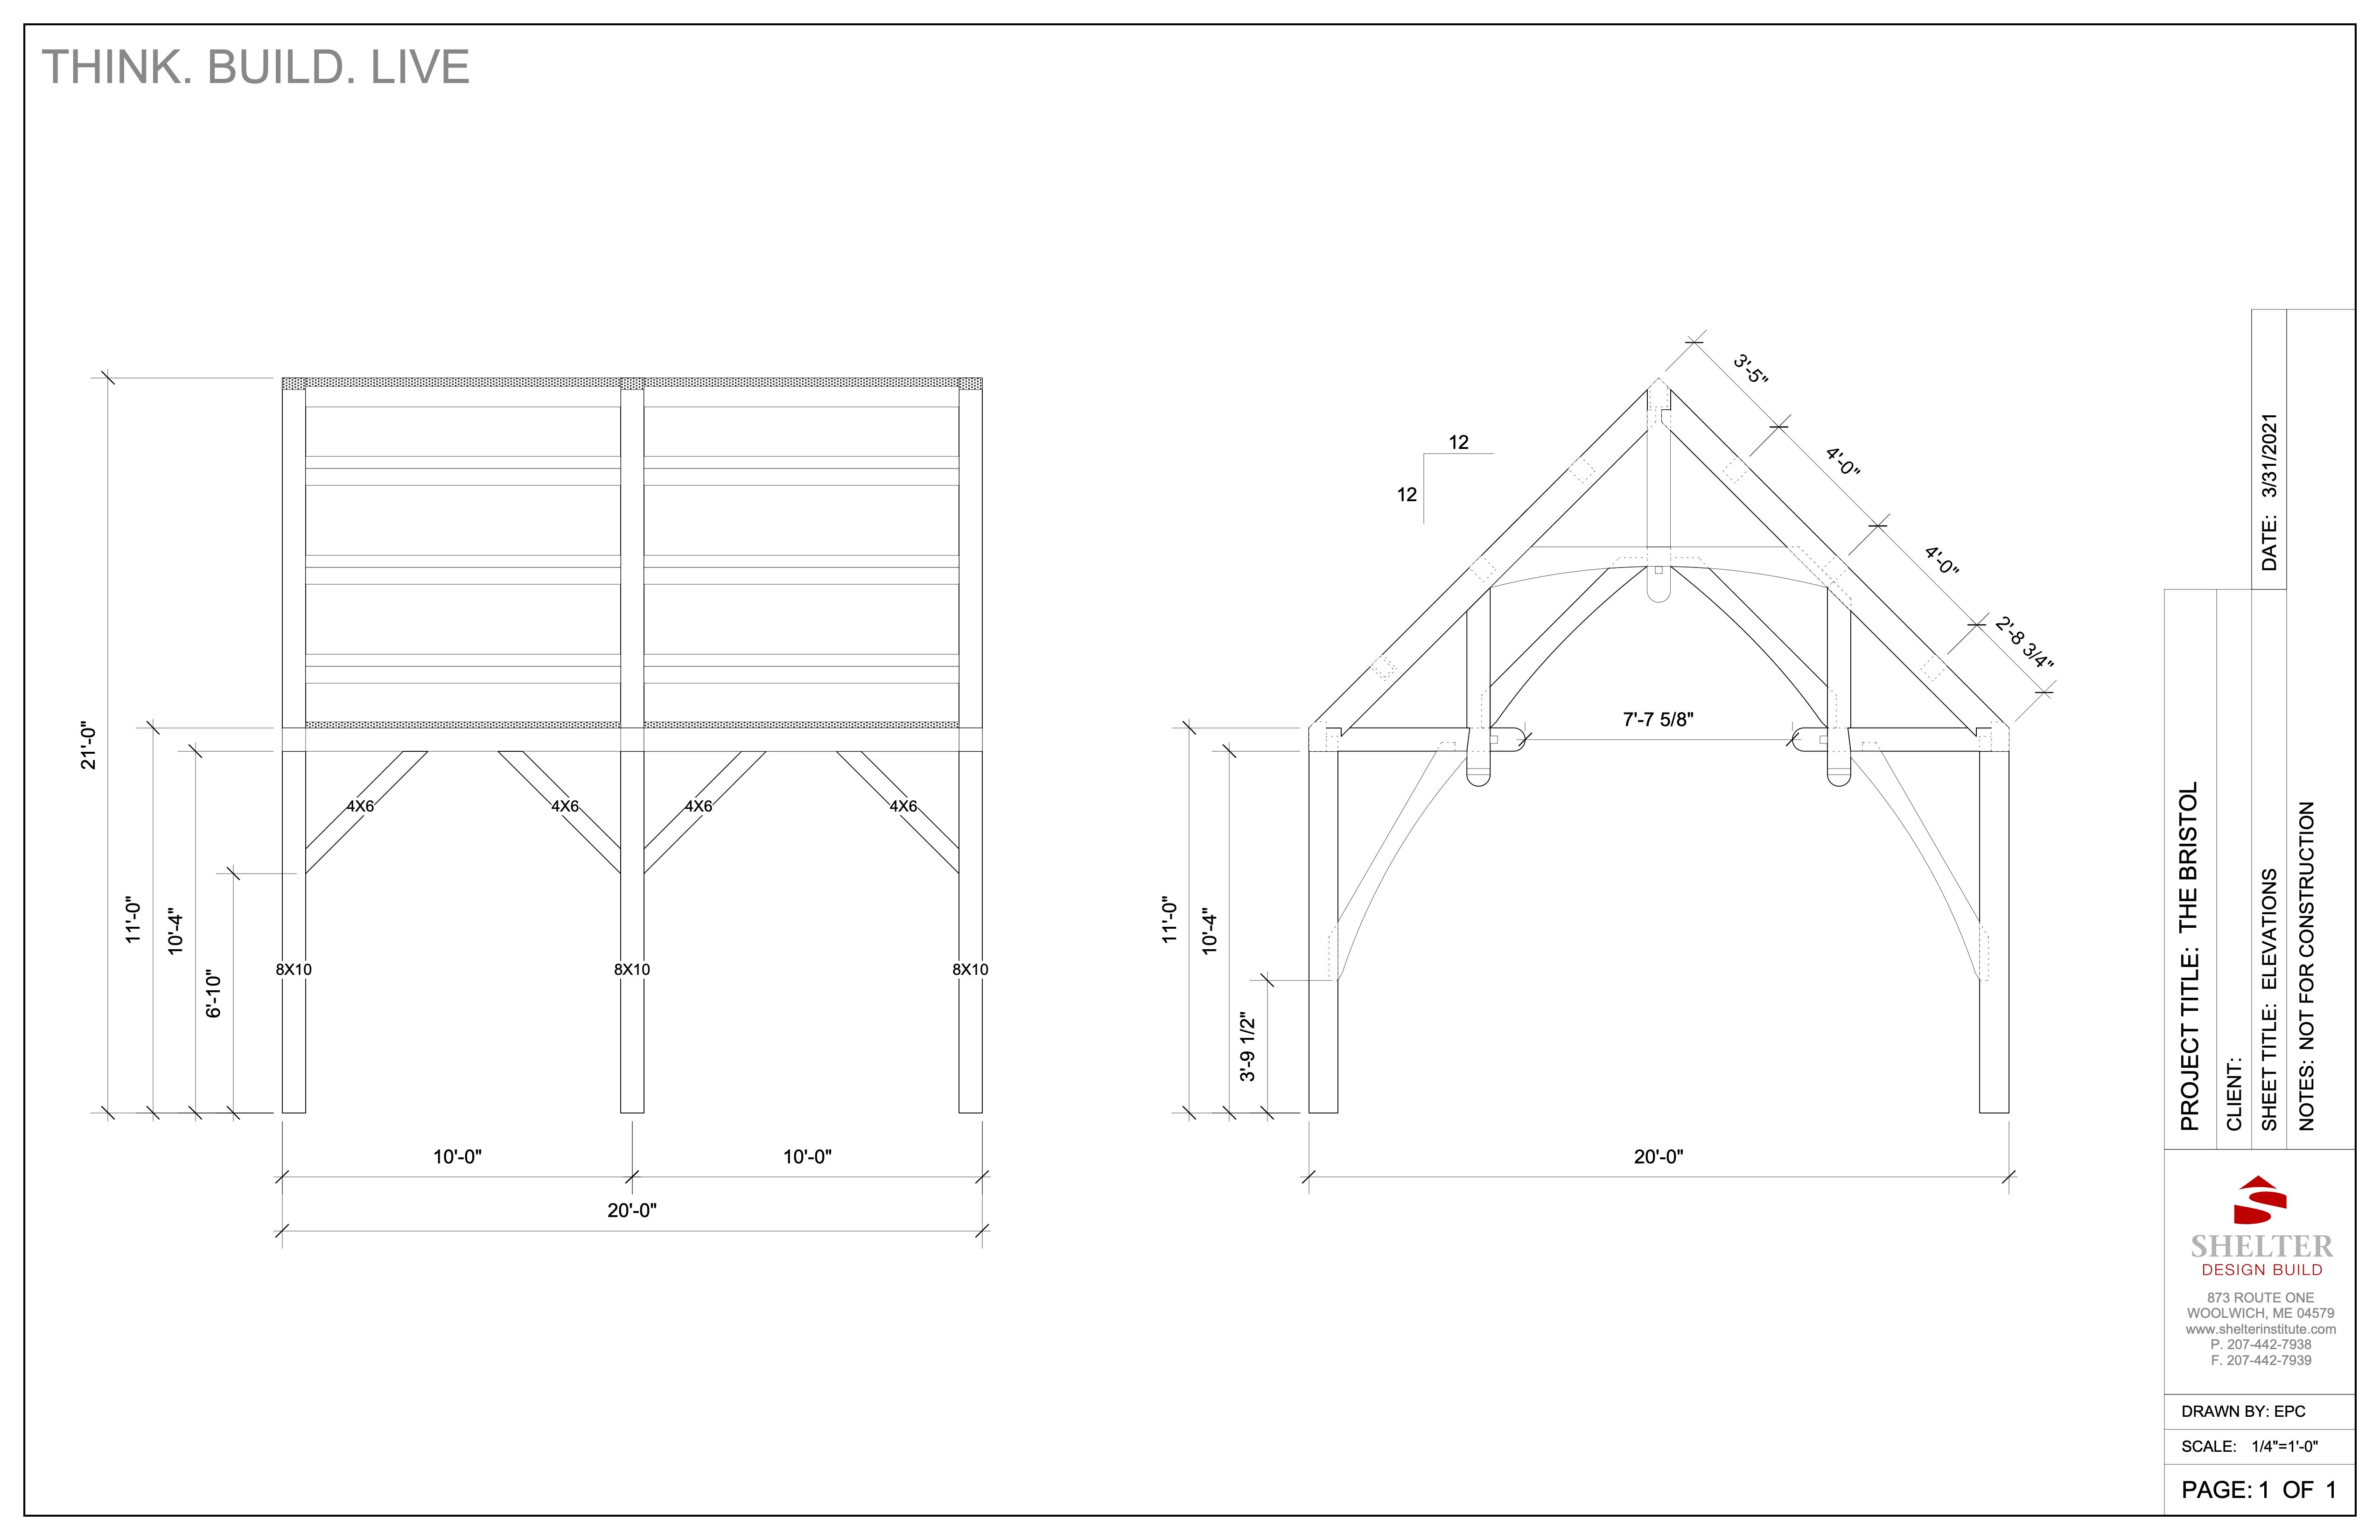 The Bristol: Timber Frame Cut Sheet Package 20x20 Hammer Beam Truss